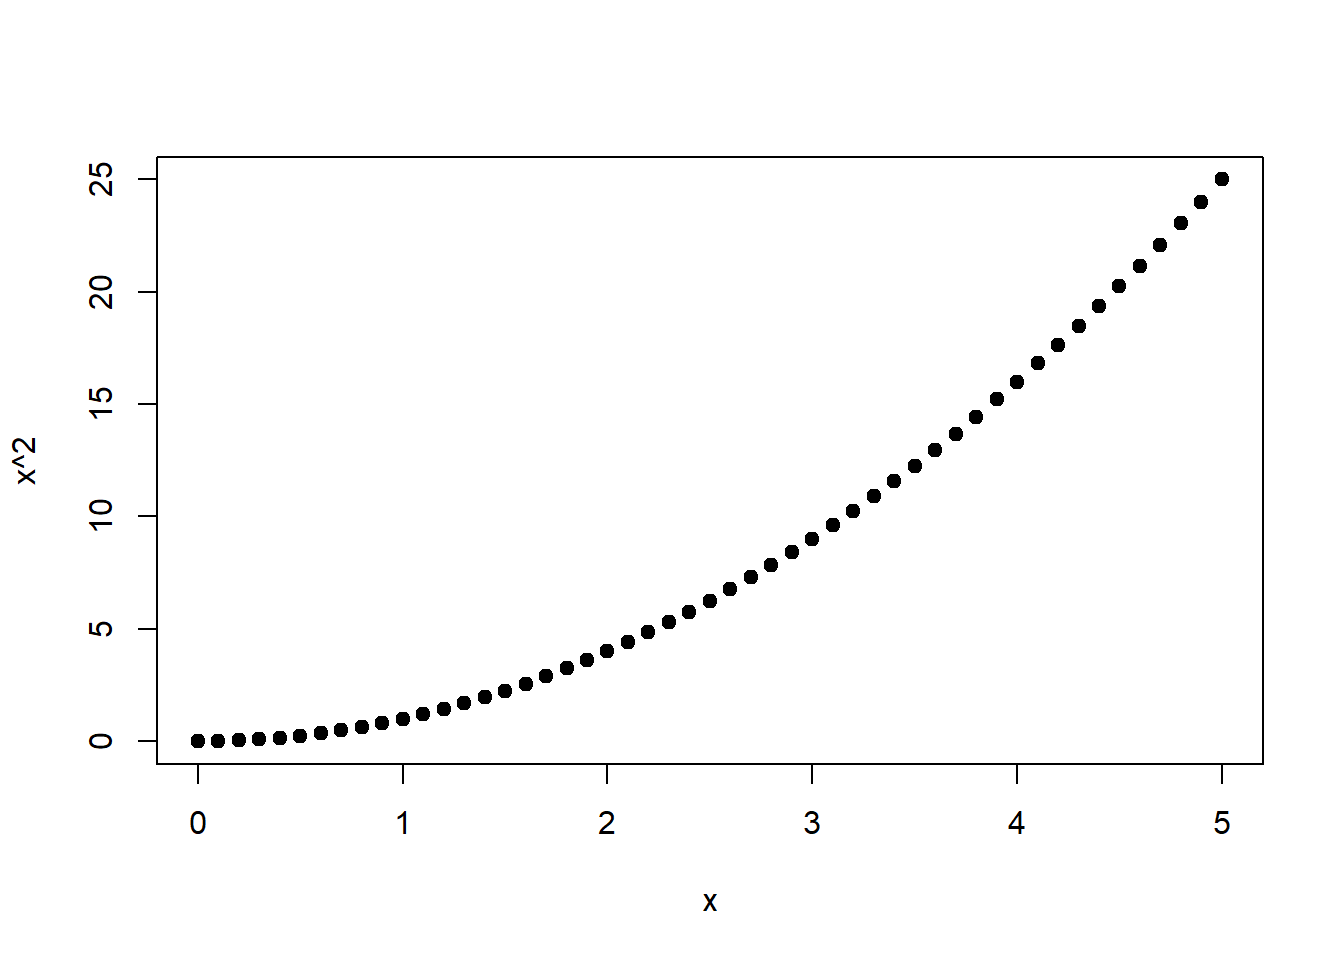 Links: Quadratische Funktion von $x$. Rechts: Wurzelfunktion von $x^2$, s. Gleichung (1.20).